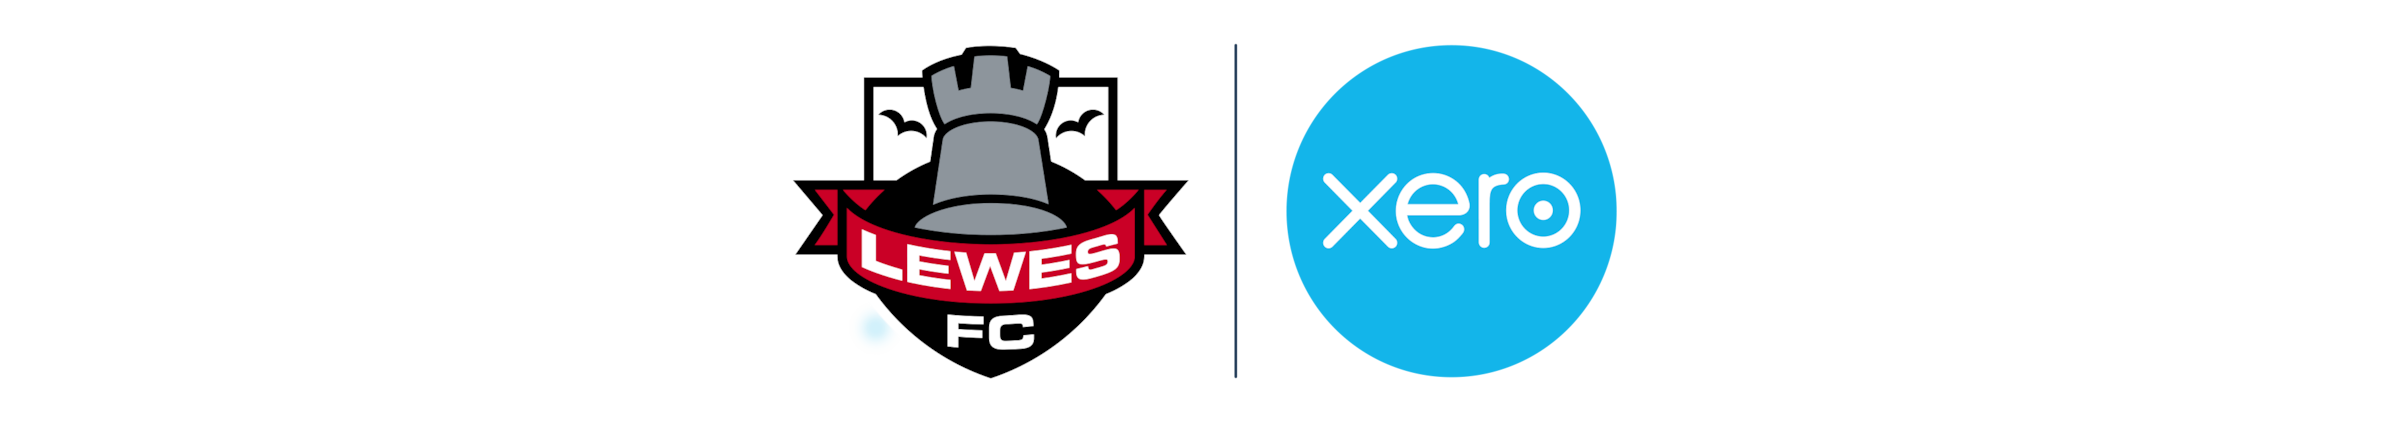 Lewes FC logo alongside Xero logo